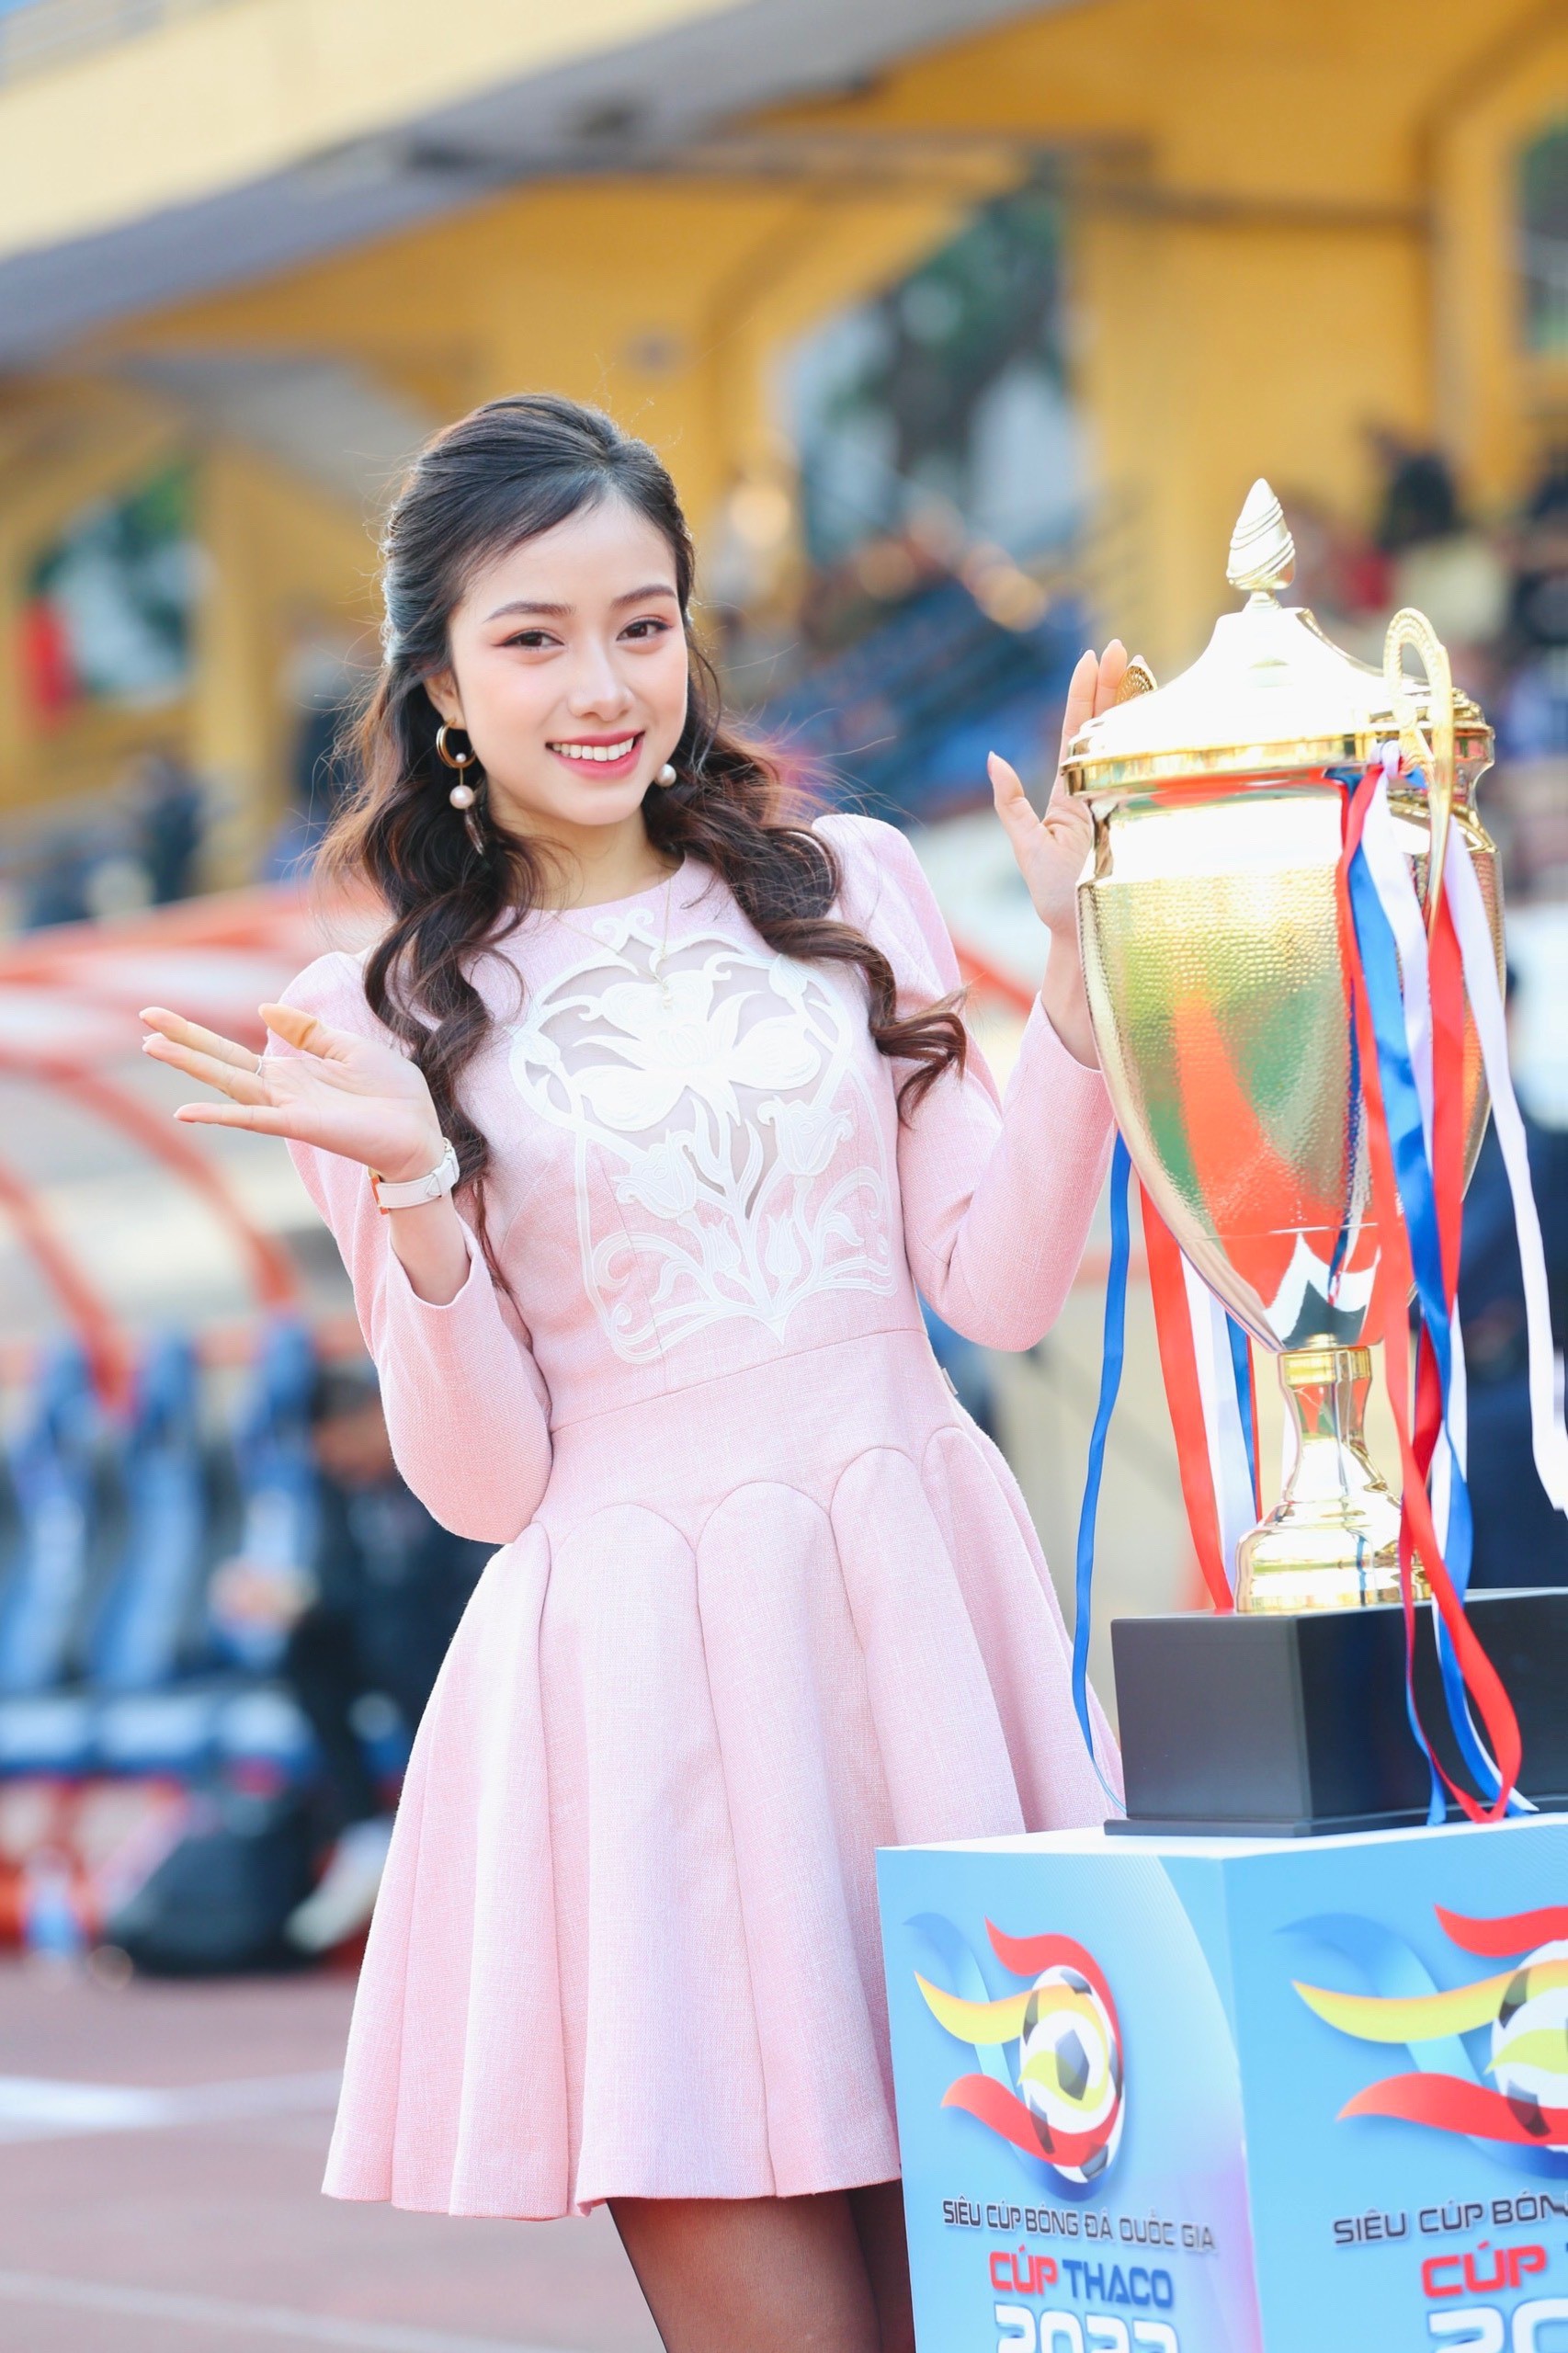 Hoa hậu Đỗ Mỹ Linh đến sân Hàng Đẫy cổ vũ đội bóng của ông xã tranh Siêu cúp - Ảnh 11.